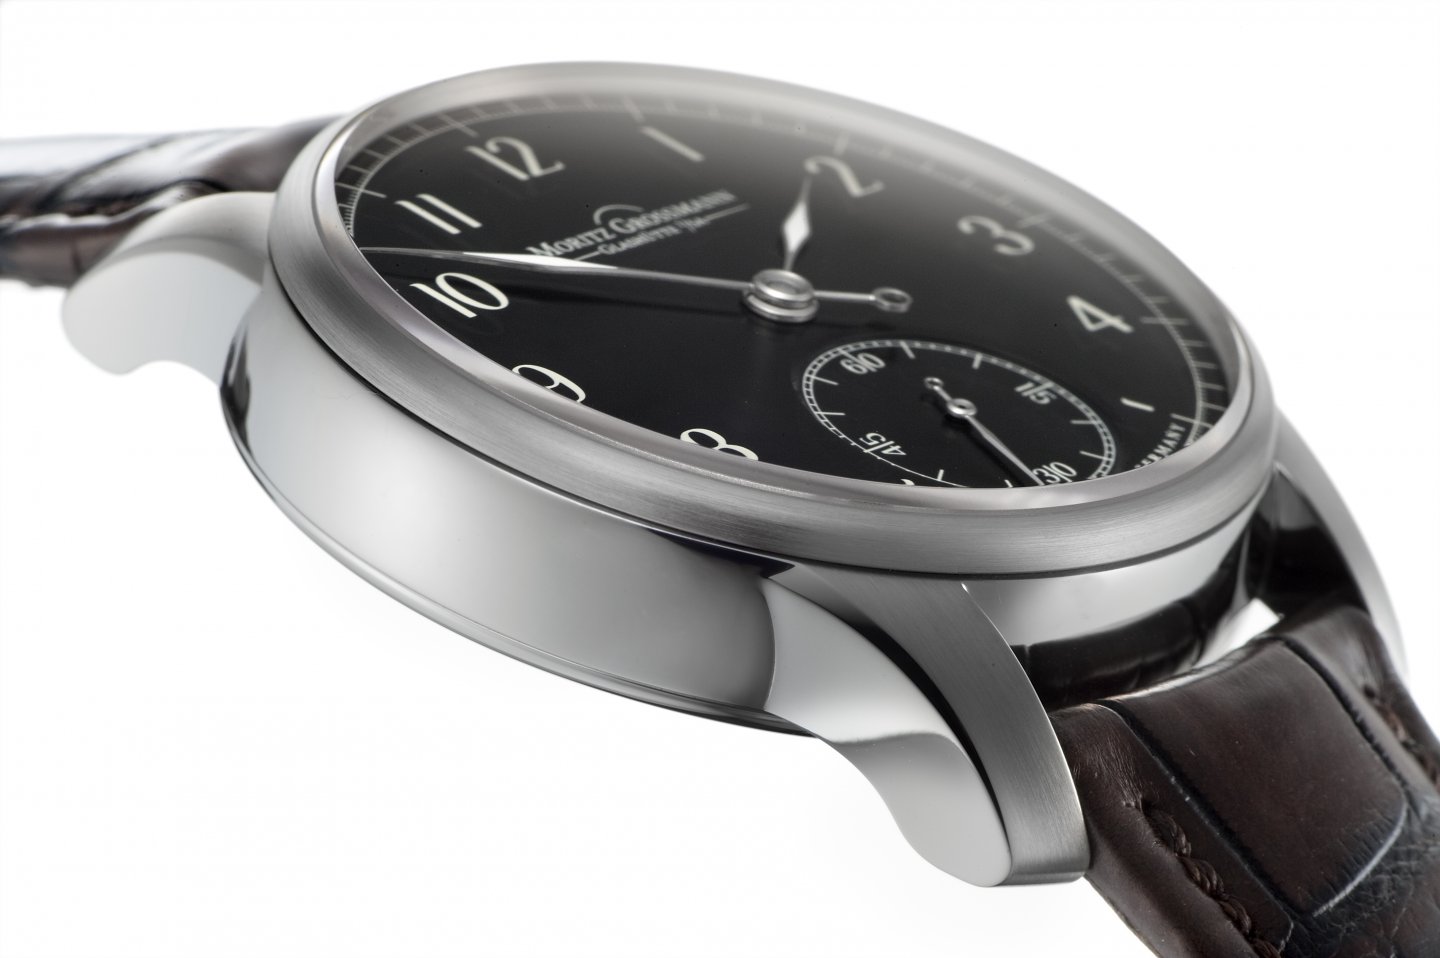 ドイツ発マニュファクチュール高級時計ブランド ‘モリッツ・グロスマン’が 日本限定スチールモデル「ベヌー・ピュア ジャパンリミテッド」を発売